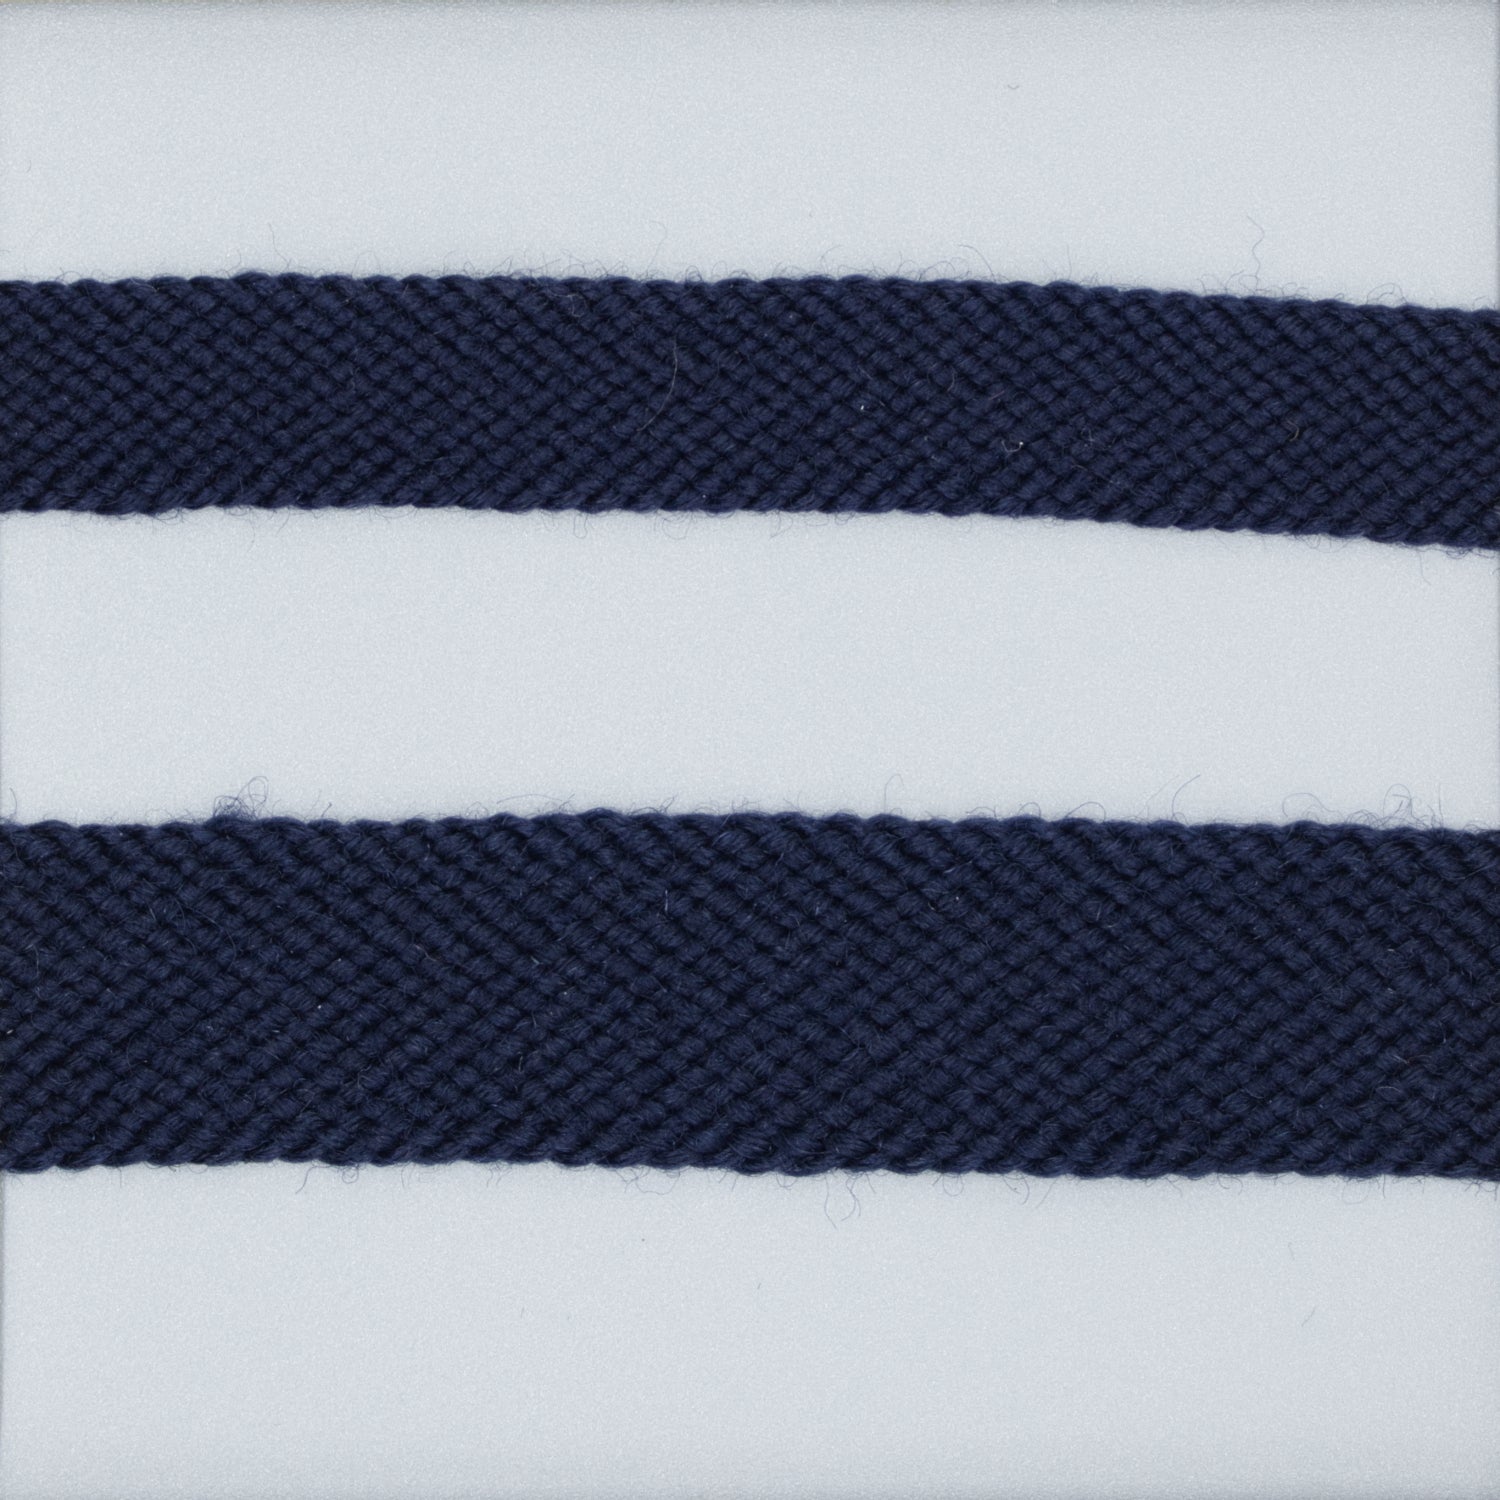 Wool tape in dark indigo 1/2 inch, 5/8 inch